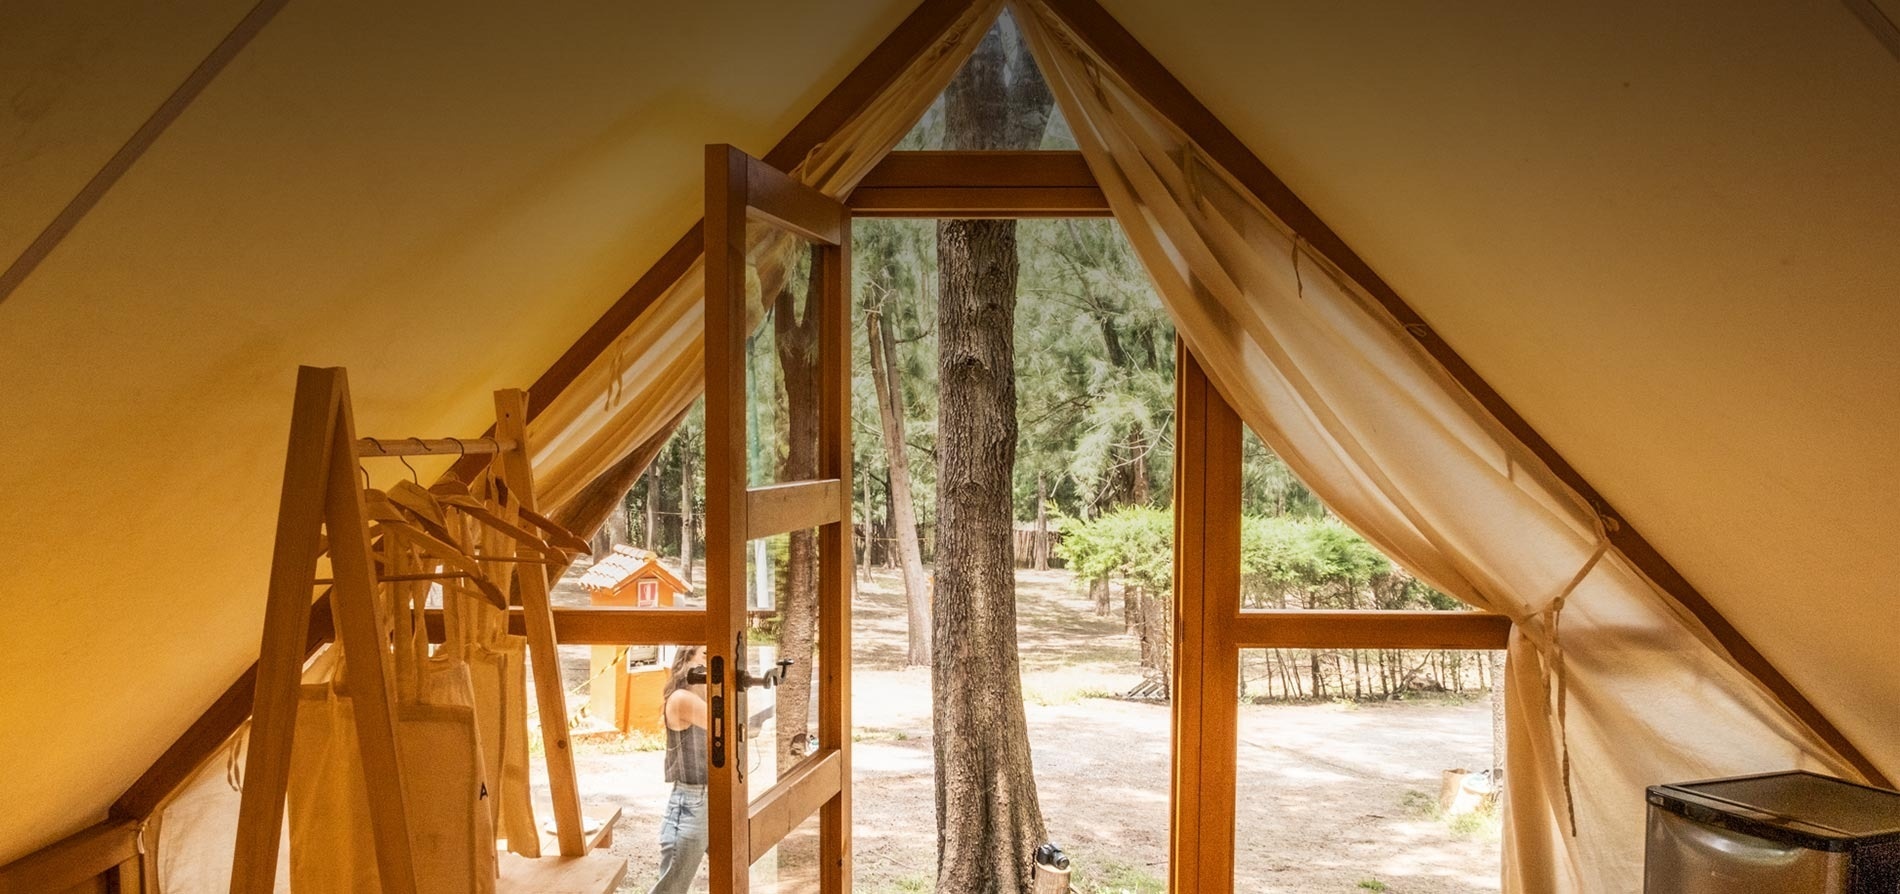 une tente avec une fenêtre ouverte sur une forêt